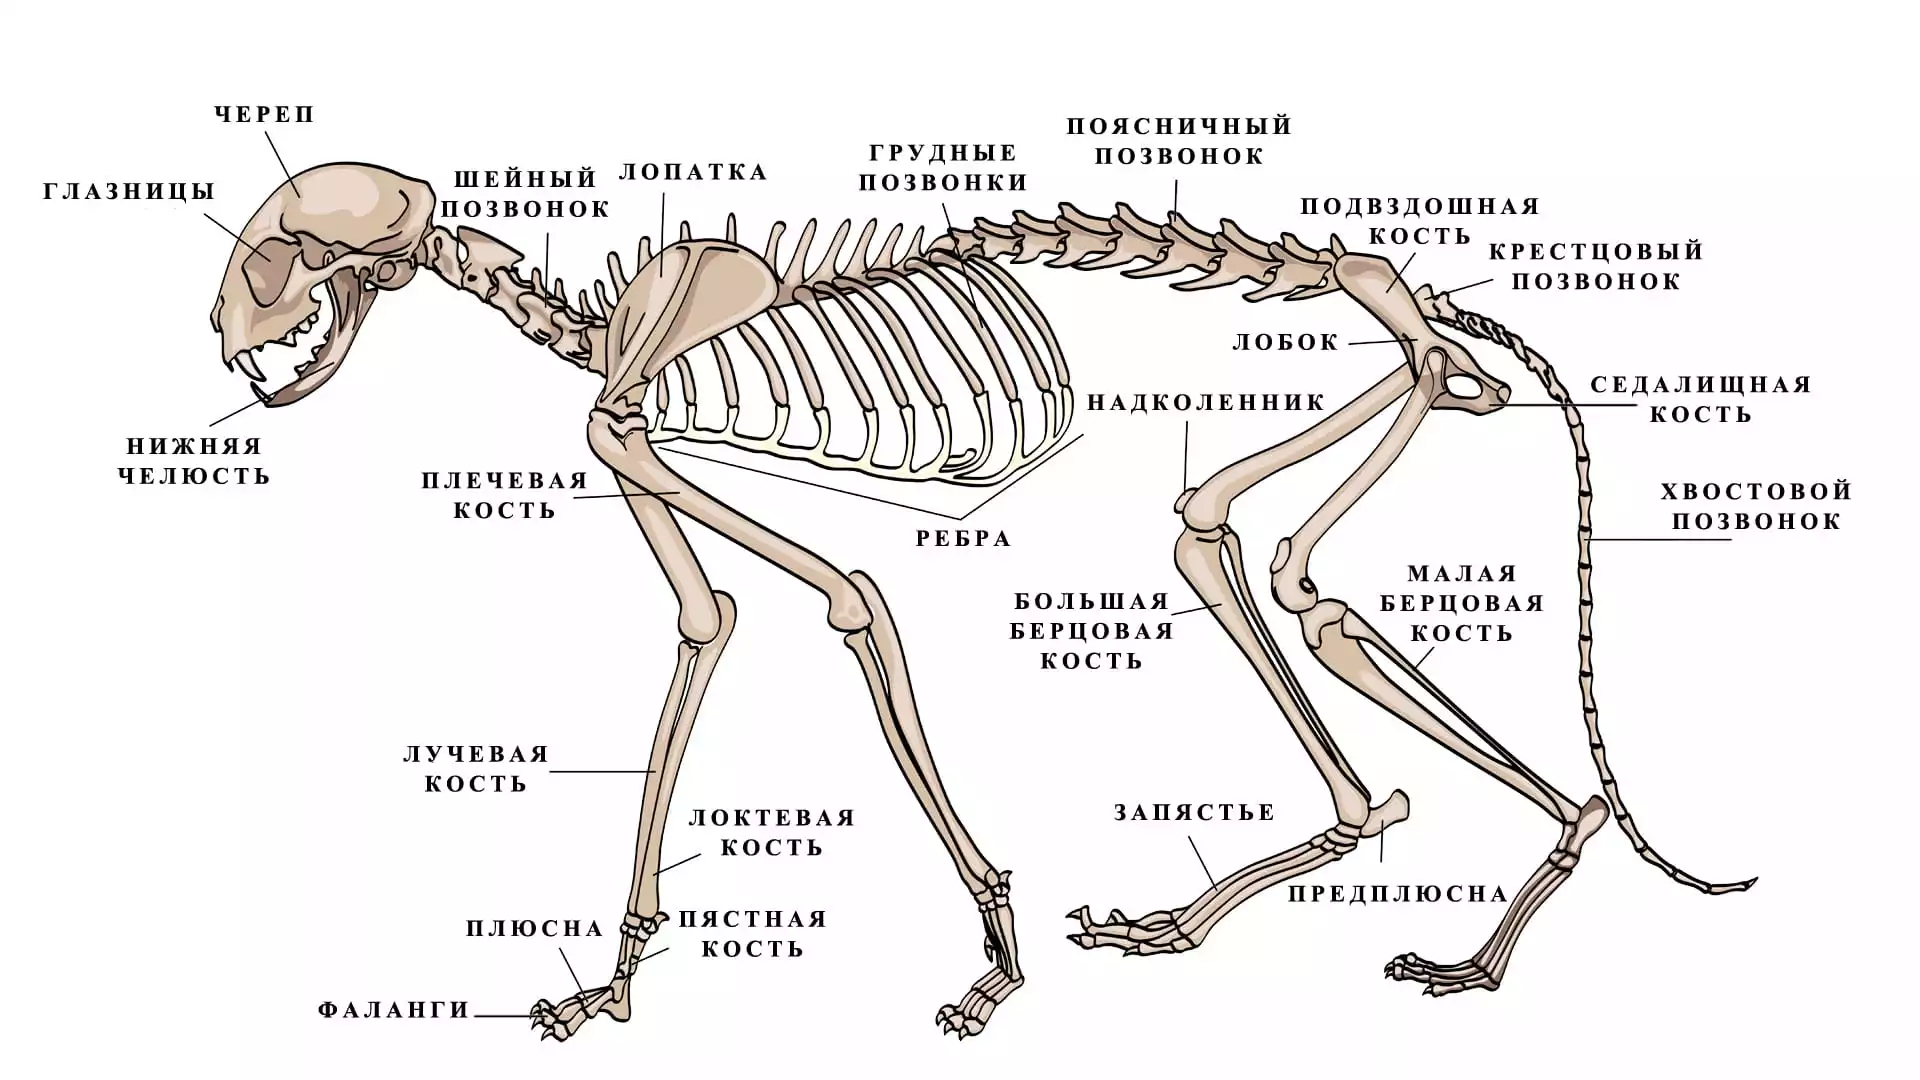 Скелет кошки - строение, анатомия, фото